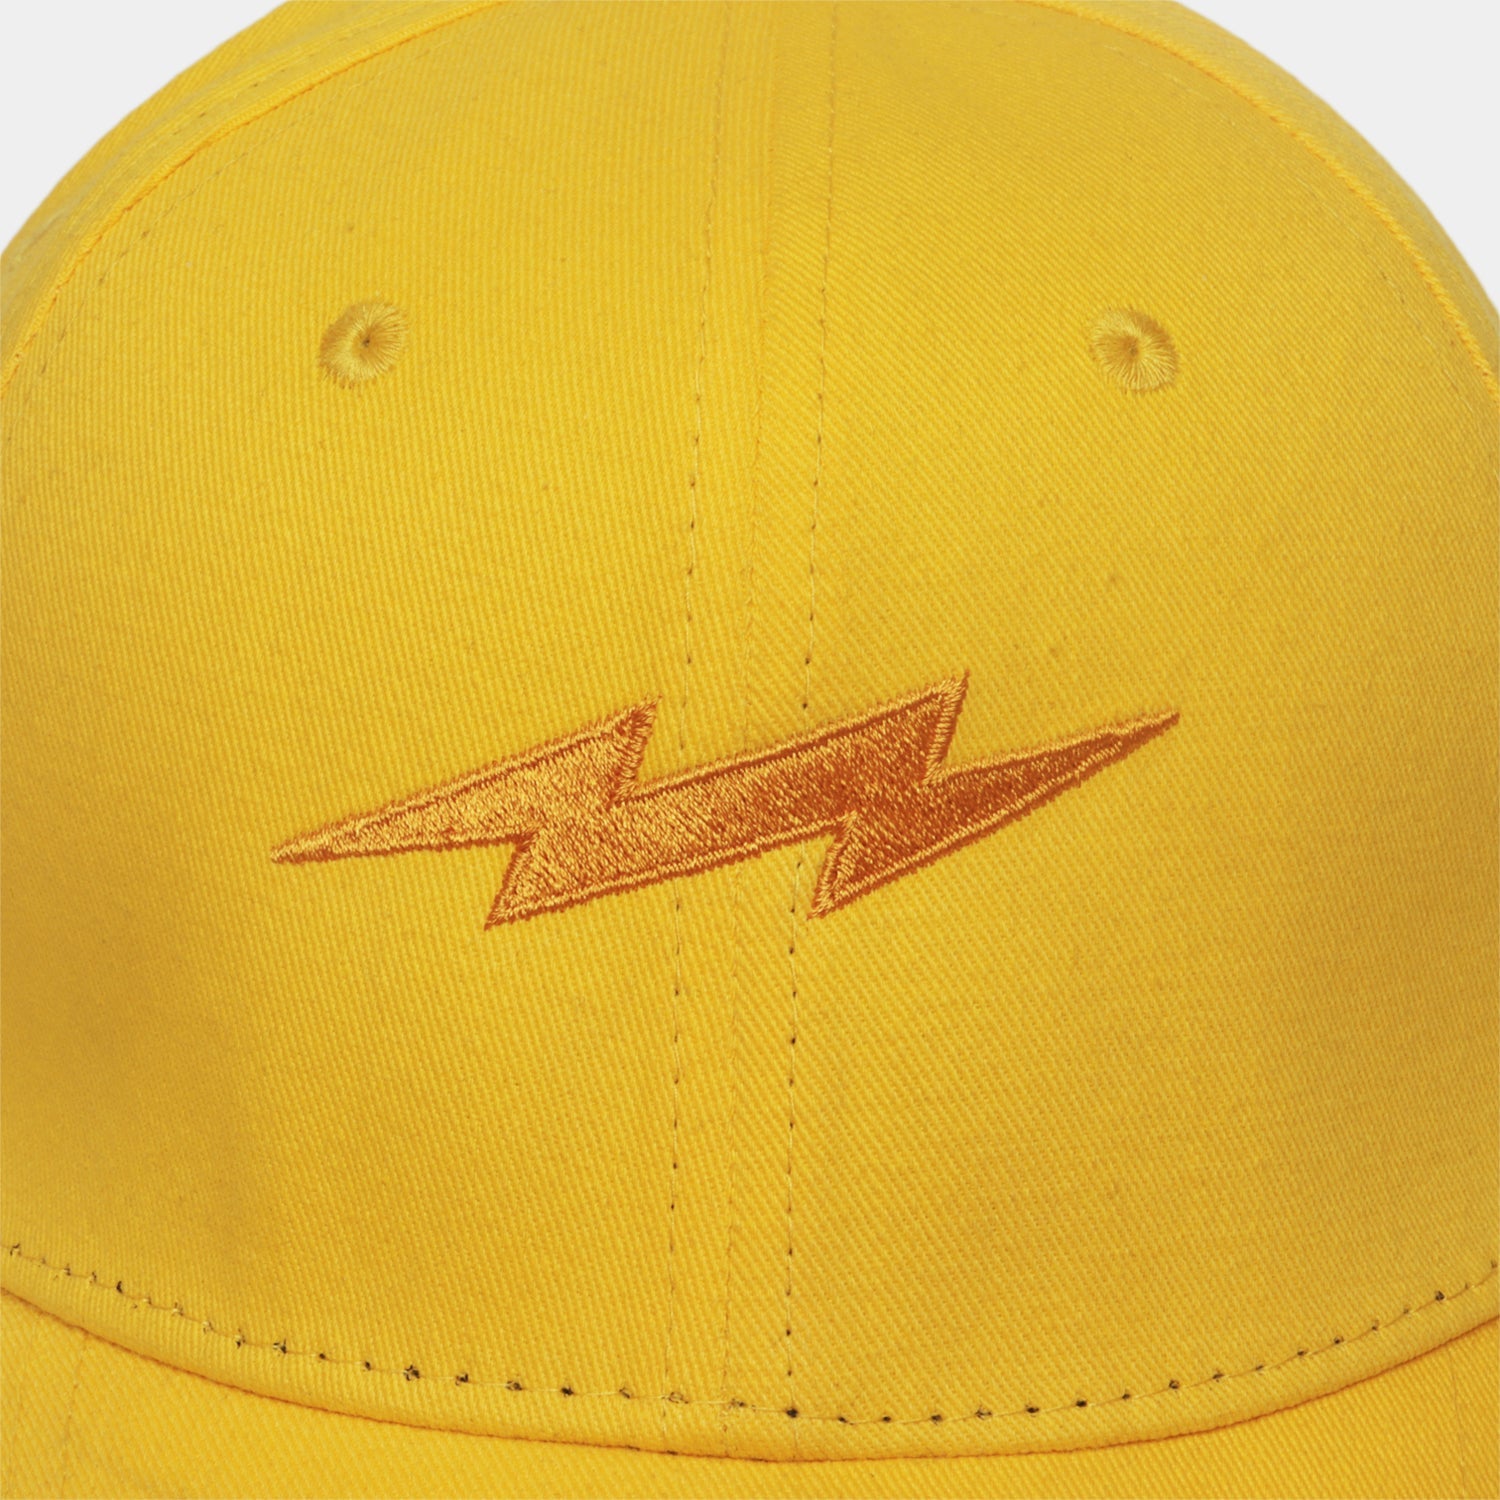 OG Thunder Baseball Cap Yellow